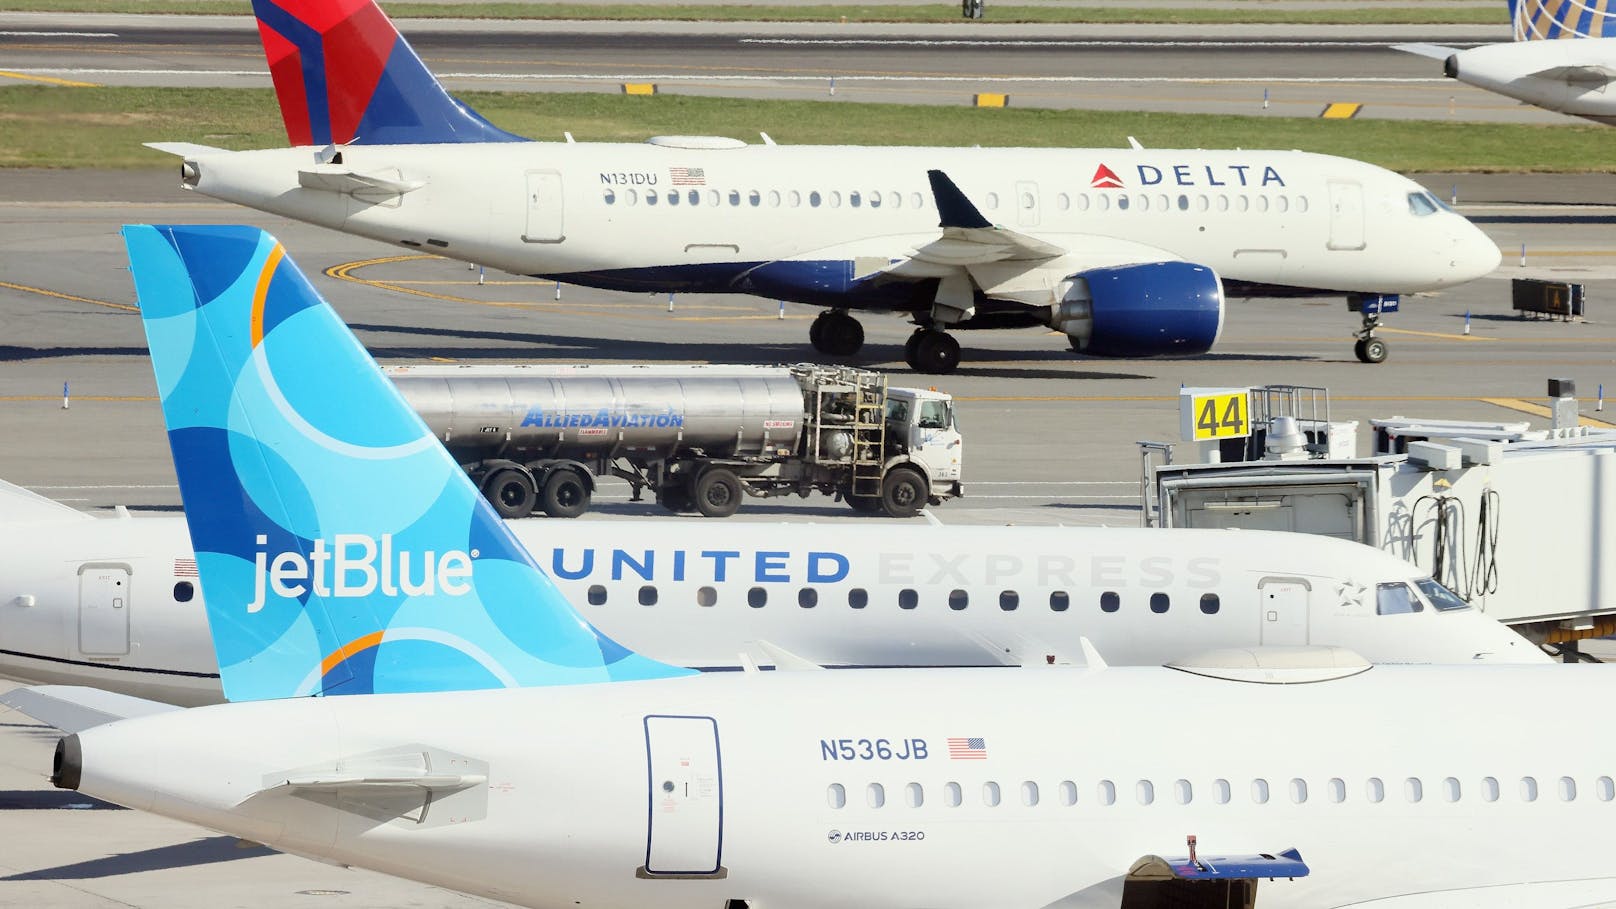 Die Batterie im Laptop eines Flugpassagiers fing am Samstagabend plötzlich Feuer. Die Maschine der Airline JetBlue war kurz zuvor gelandet. 